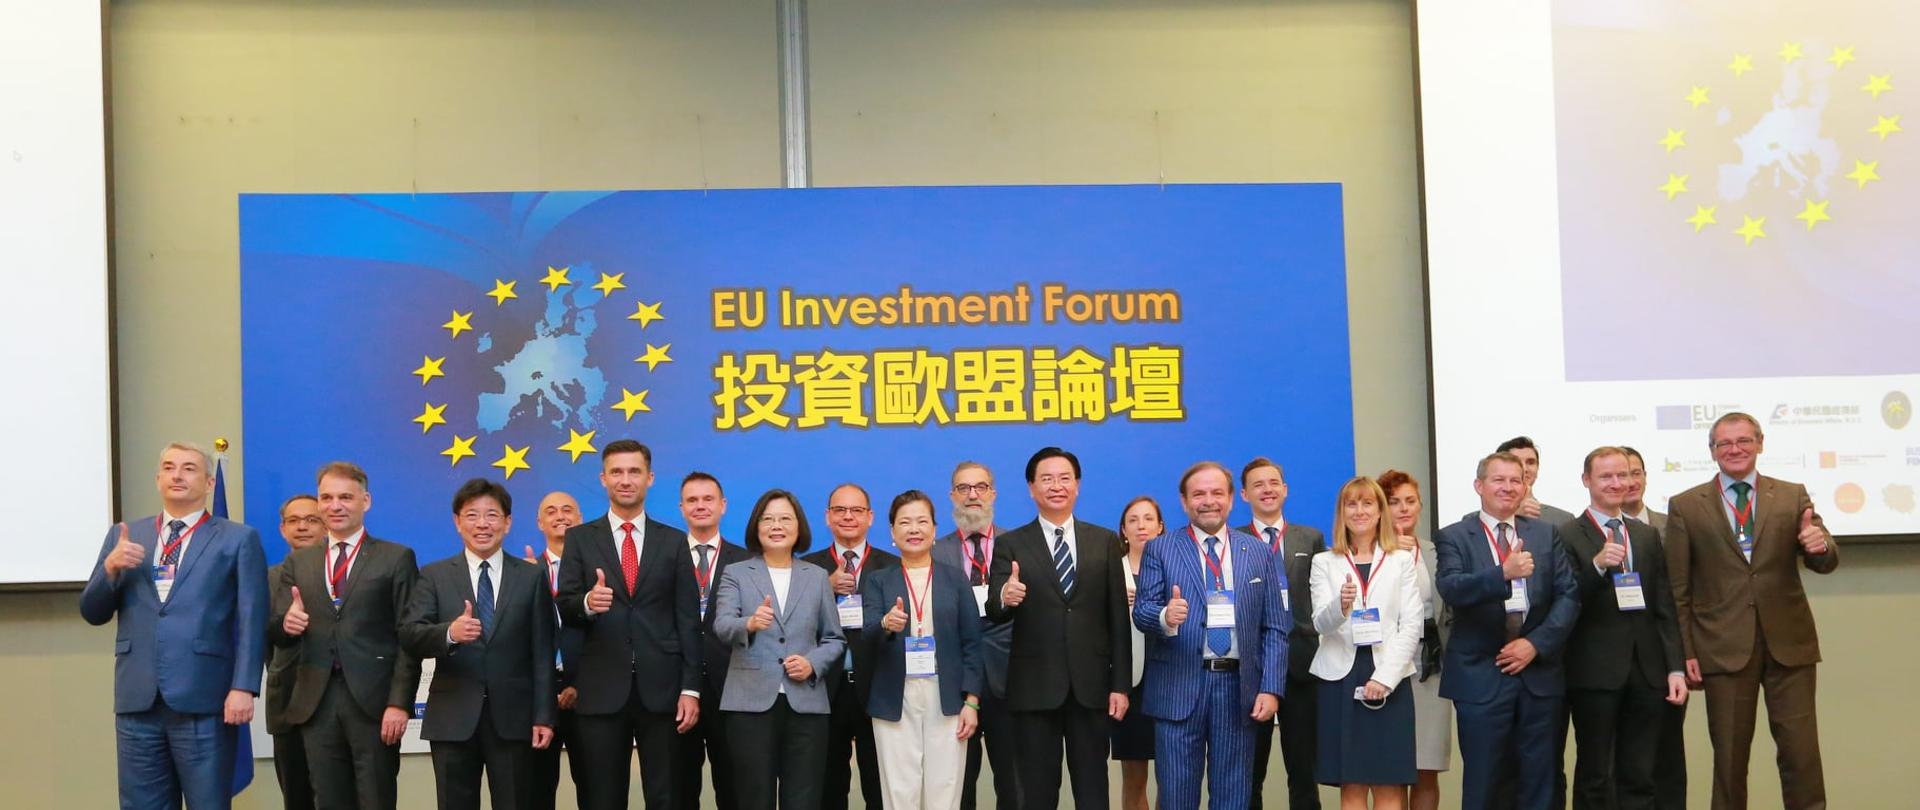 EU Investment Forum